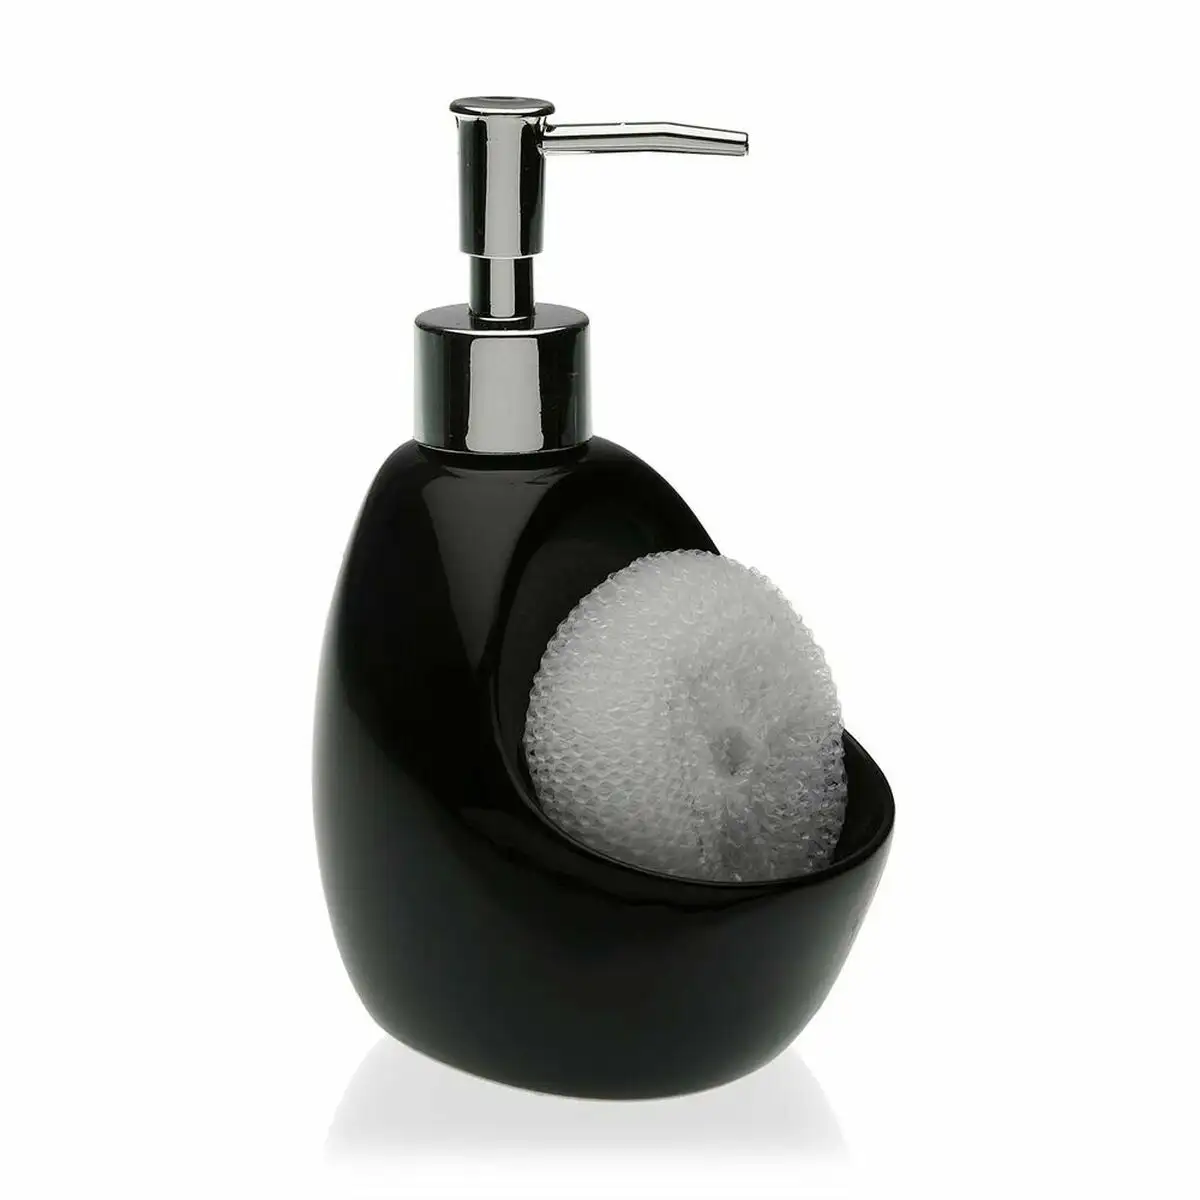 Distributeur de savon versa noir ceramique 6 x 18 8 x 6 cm _8685. DIAYTAR SENEGAL - Où Votre Shopping Prend Vie. Explorez notre boutique en ligne pour trouver des articles qui vous ressemblent et qui ajoutent de l'éclat à votre quotidien.